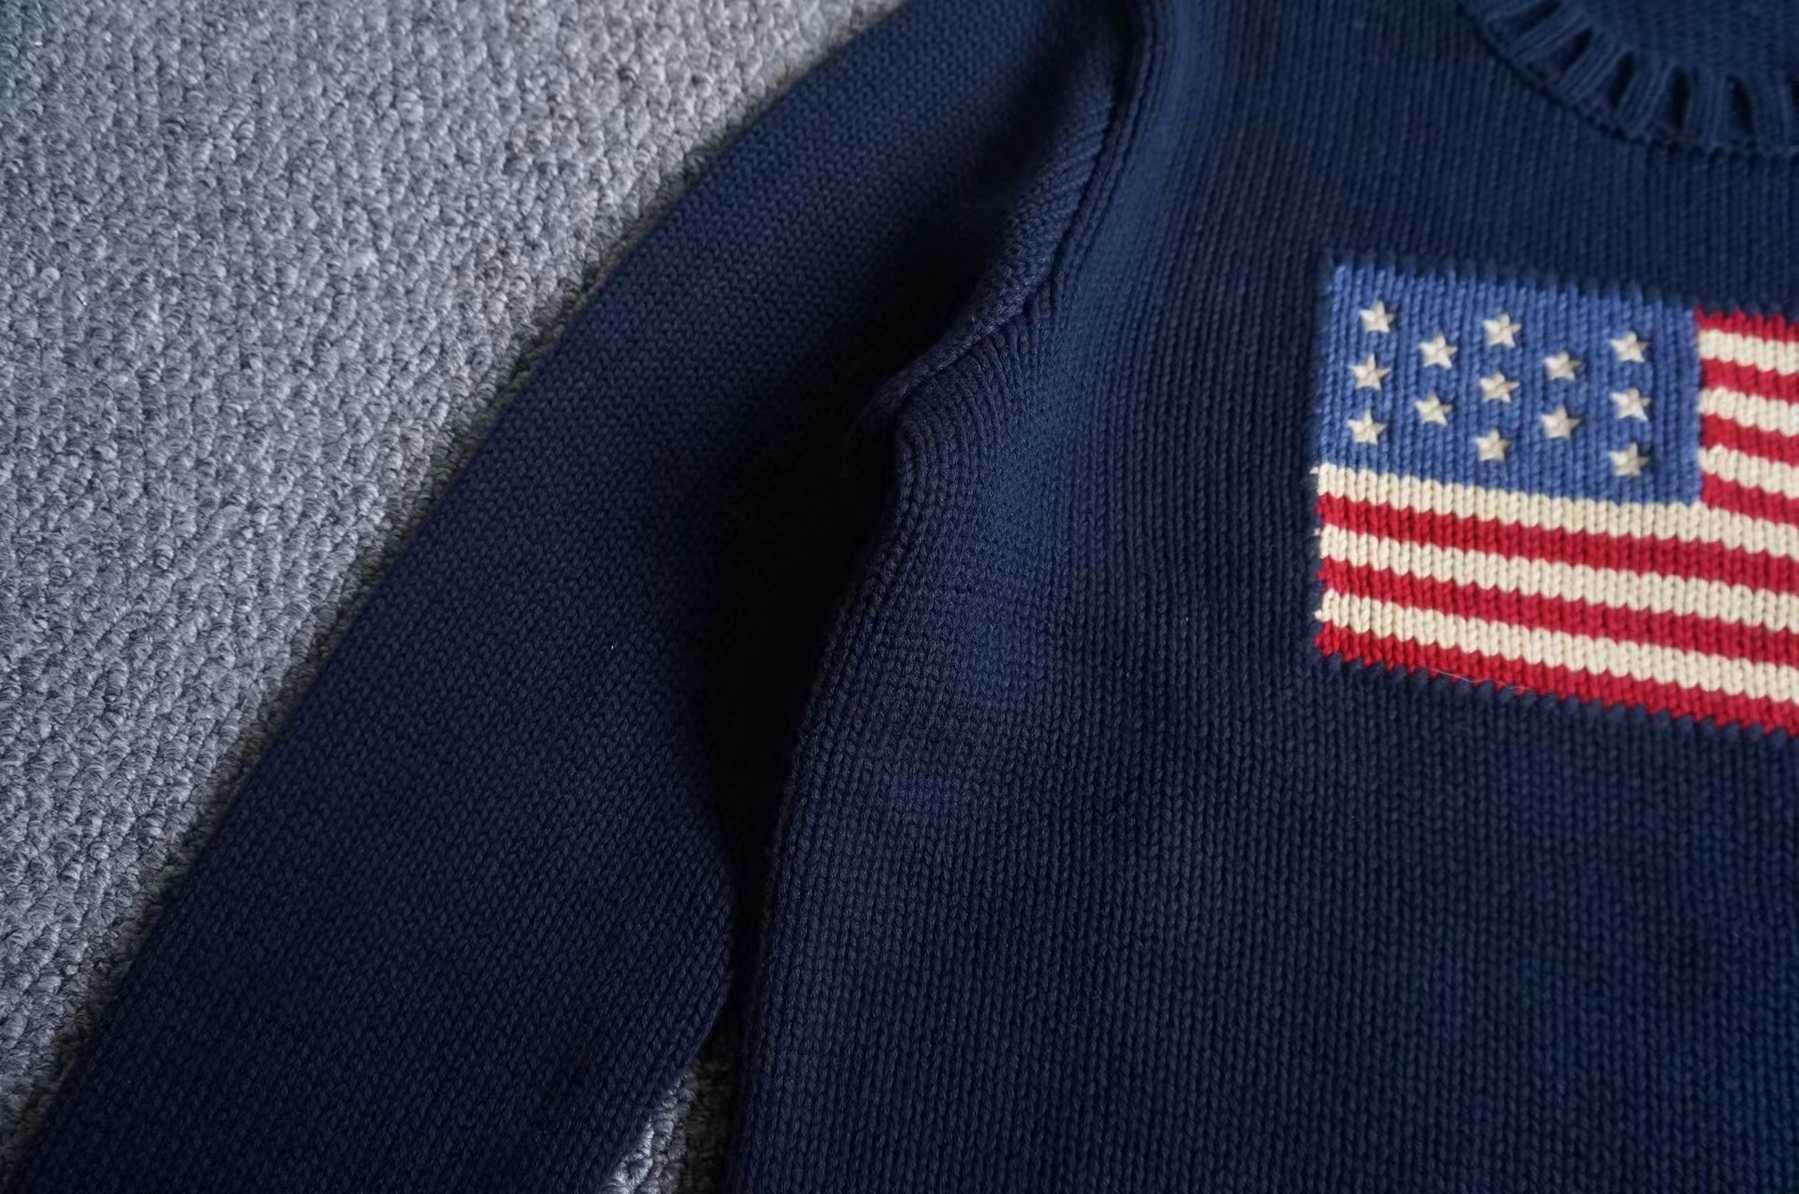 미국 프리미엄 남자 니트 스웨터 - 세련되고 편안한 양모 블렌드 풀오버  loading=